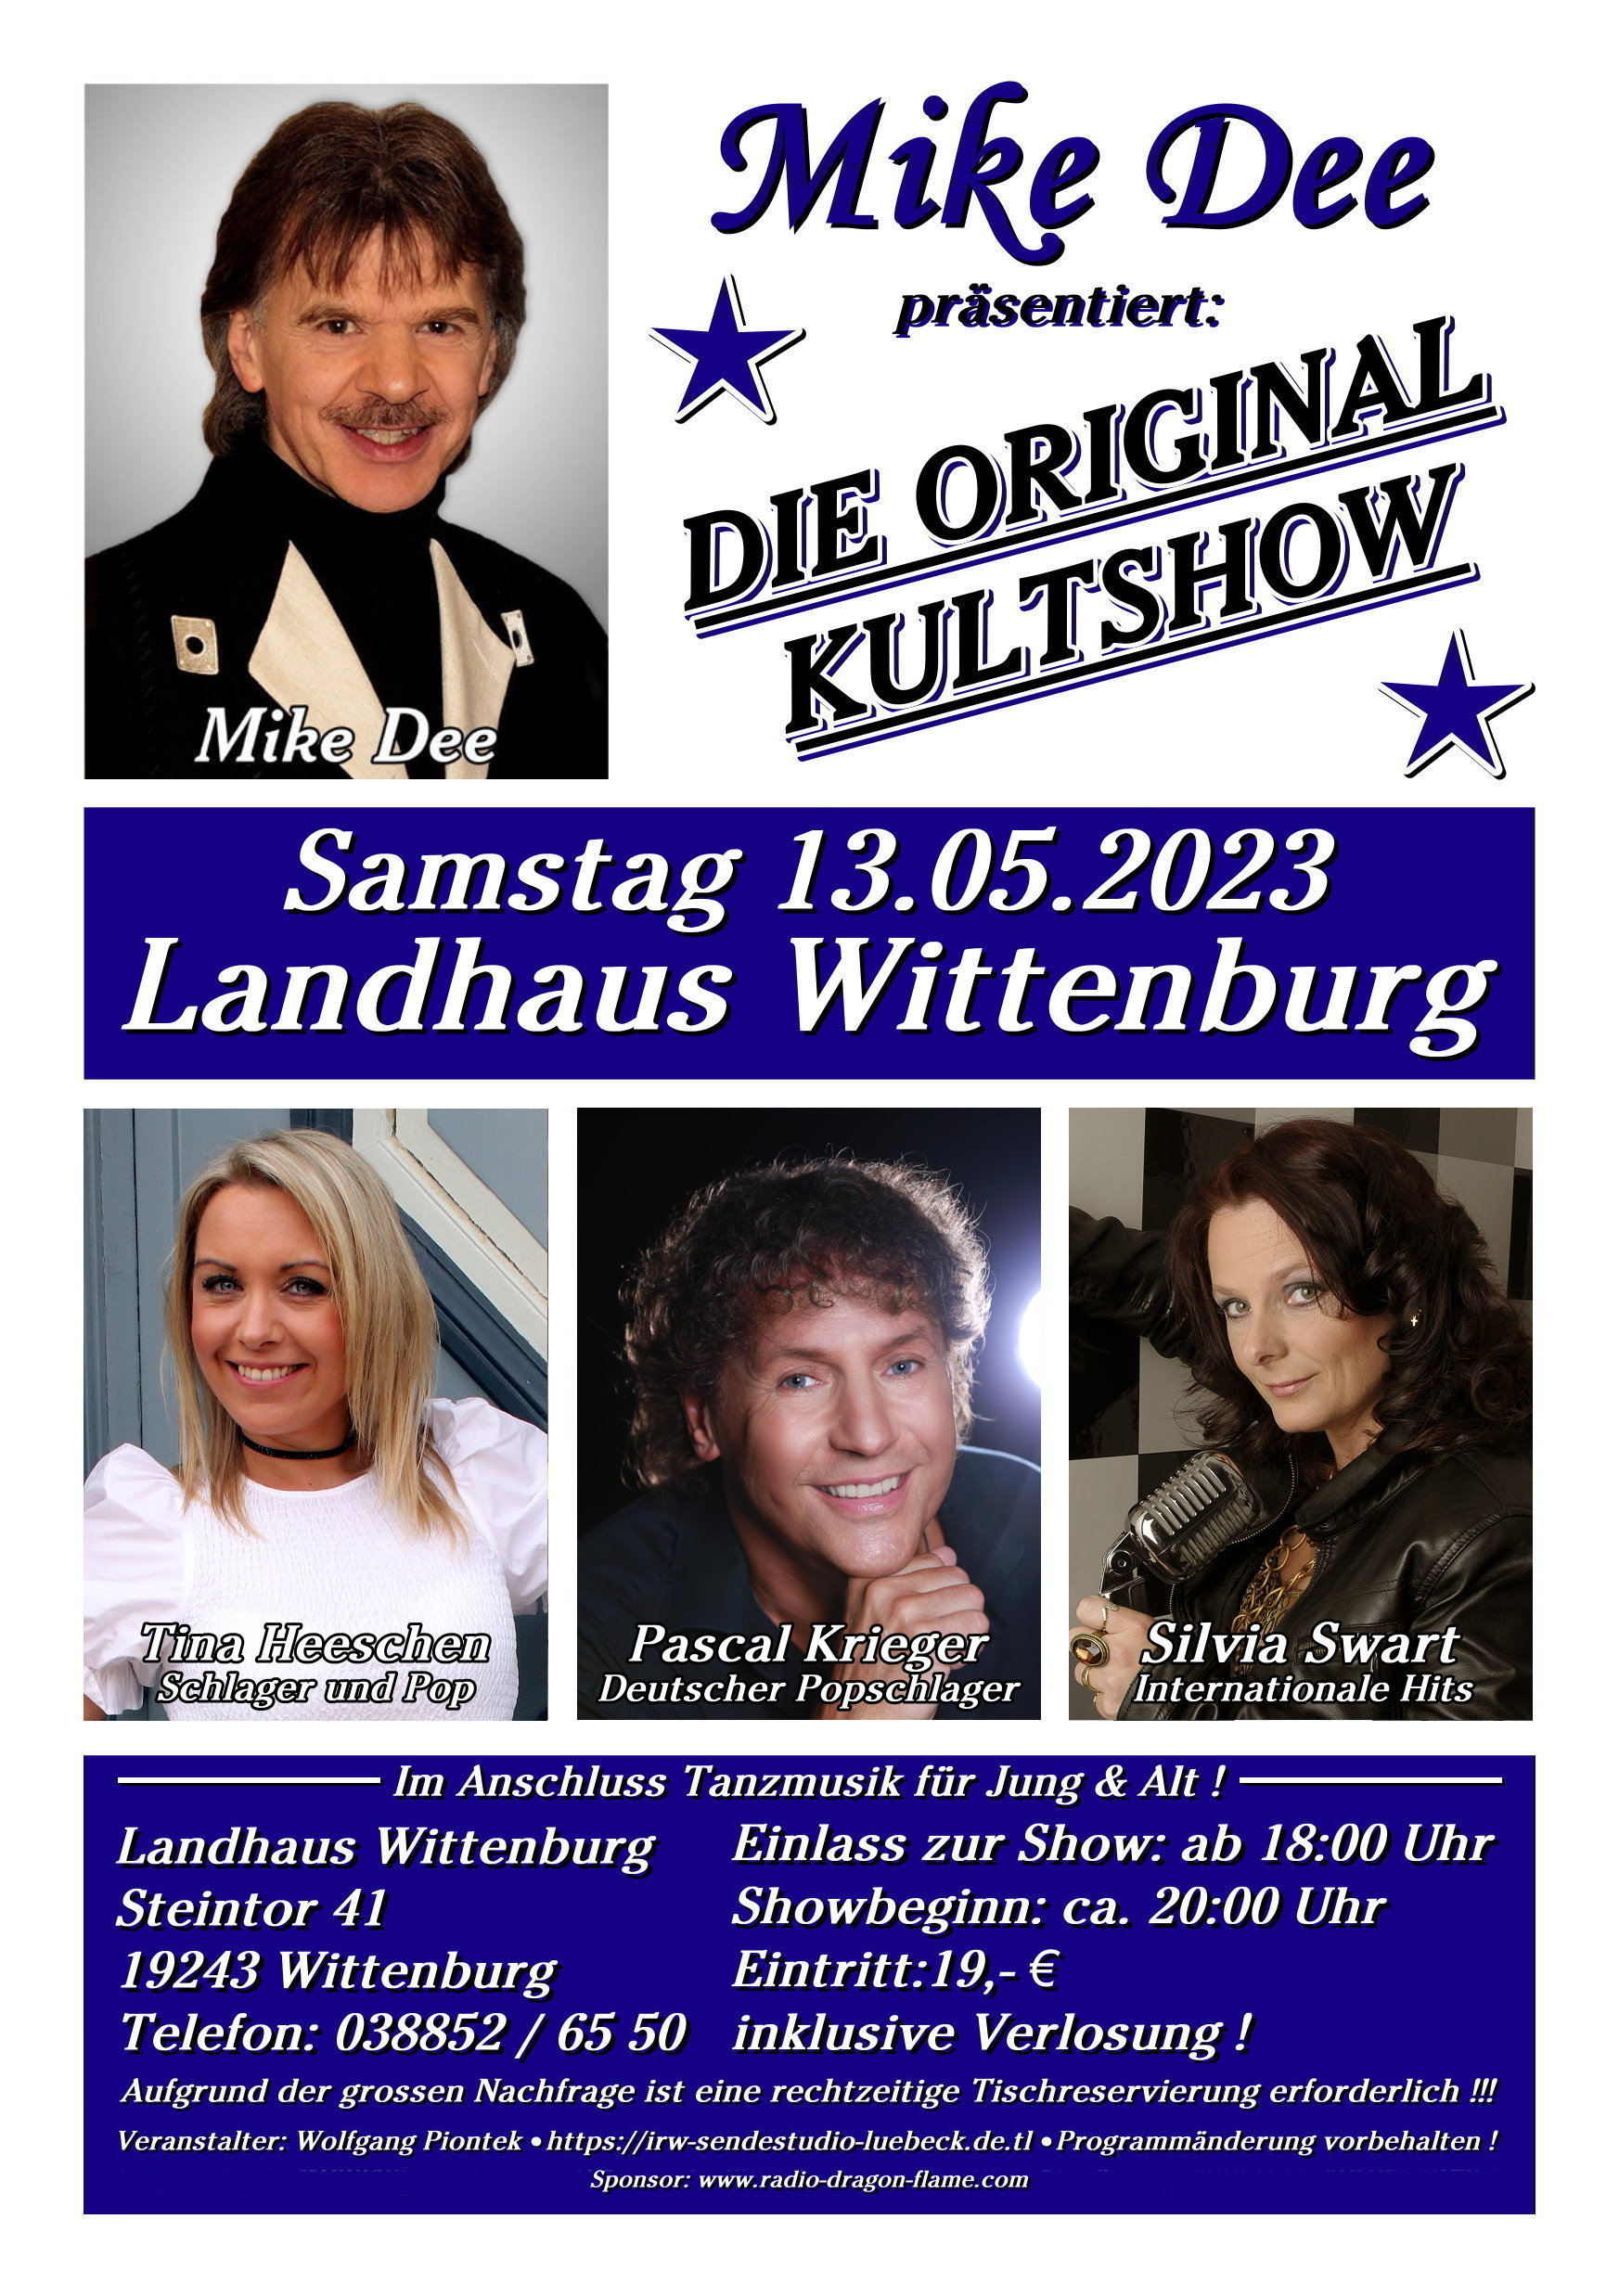 Mike Dee Kultshow in Wittenburg Plakat.jpg